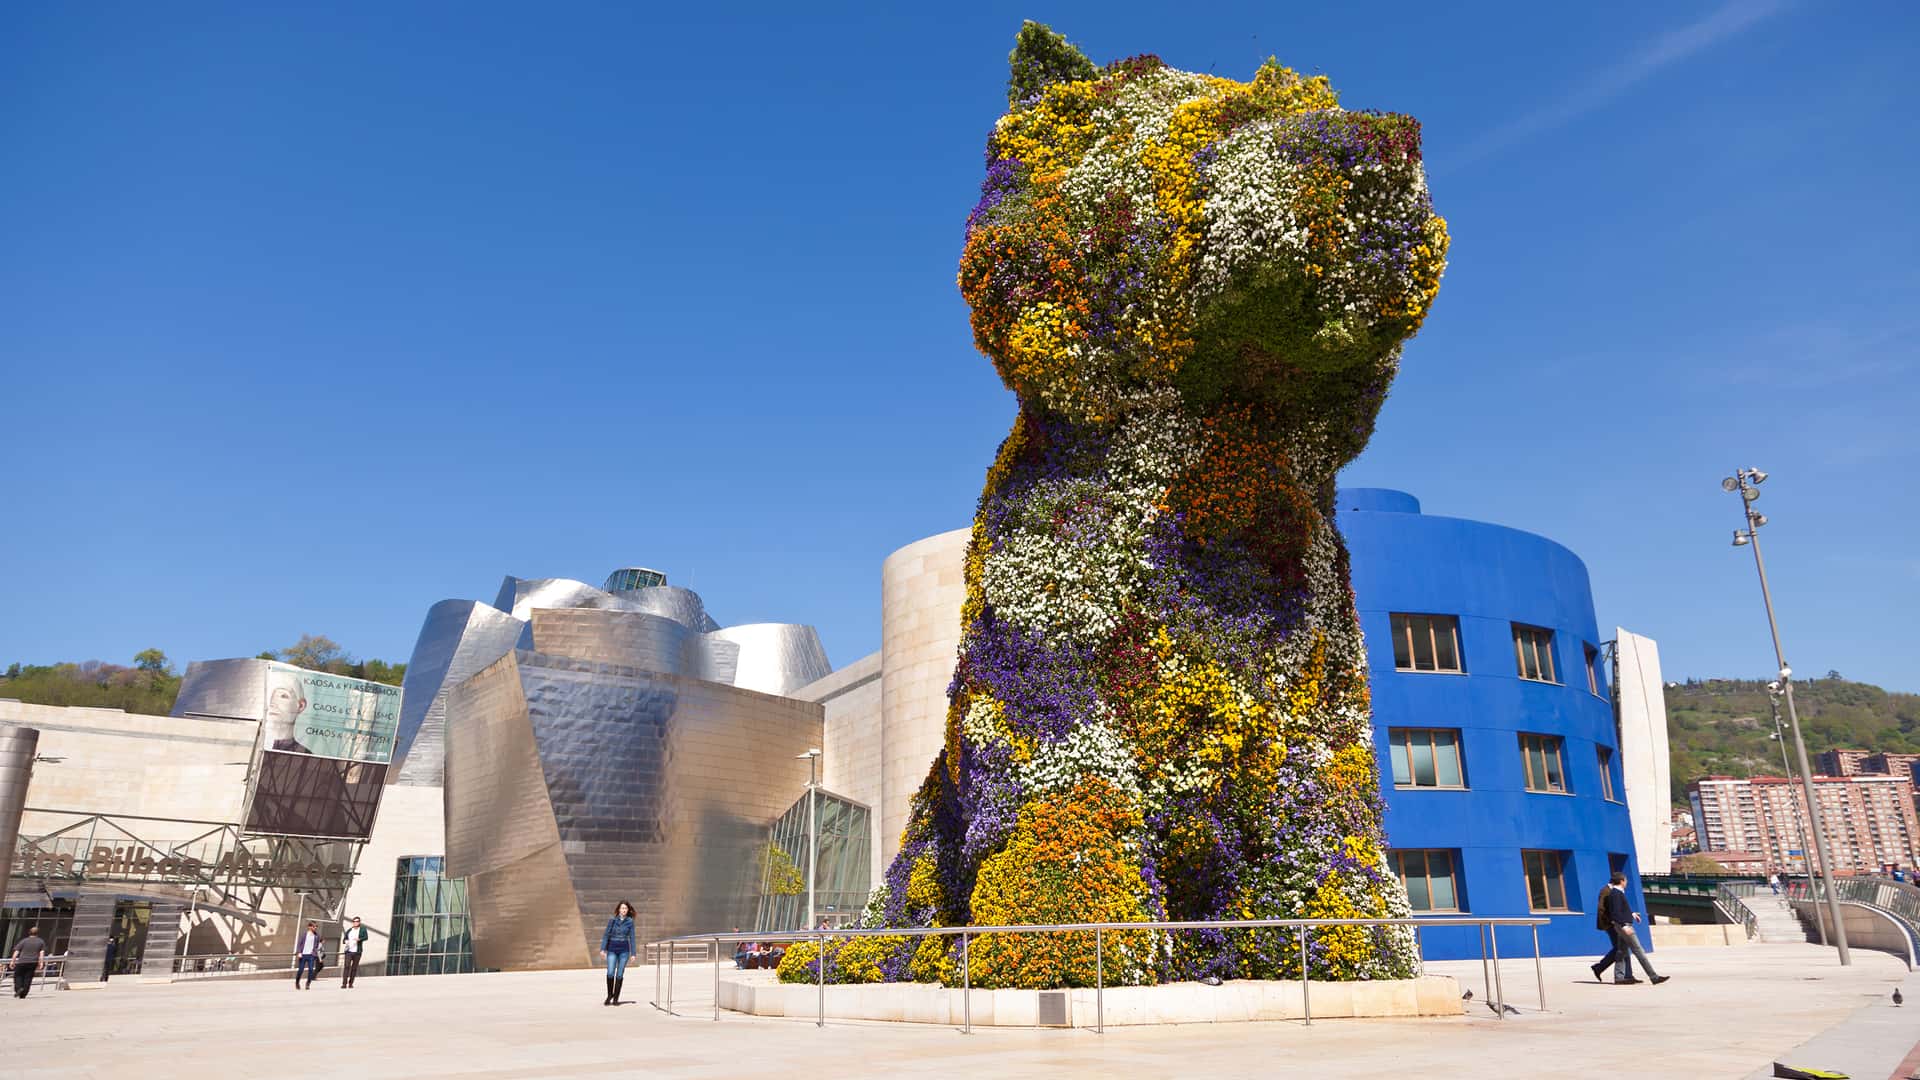 Cachorro, escultura de flores en Bilbao donde es posible contratar los servicios telefónicos de virgin telco